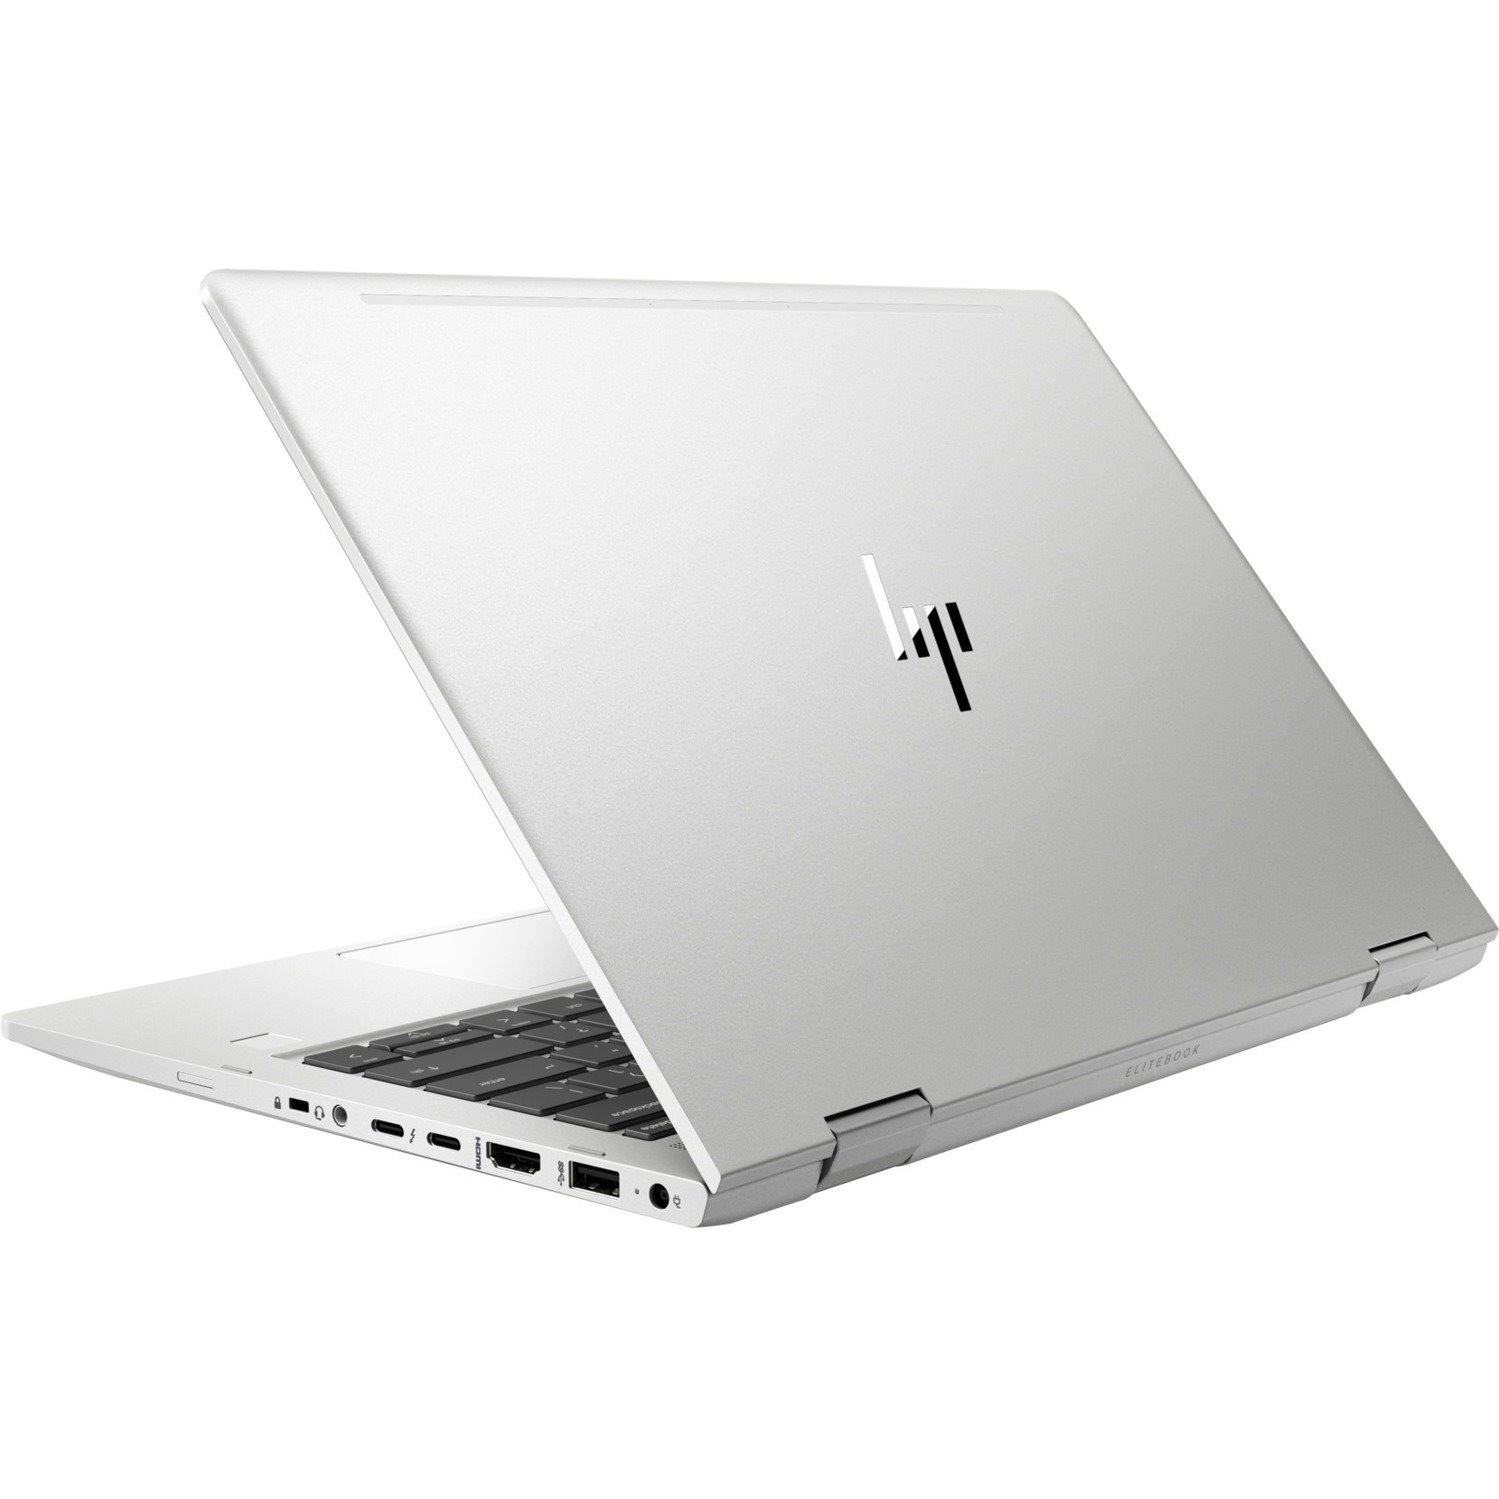 HP EliteBook x360 830 G5 13.3" Touchscreen Convertible 2 in 1 Notebook - 1920 x 1080 - Intel Core i7 8th Gen i7-8550U Quad-core (4 Core) 1.80 GHz - 8 GB Total RAM - 256 GB SSD